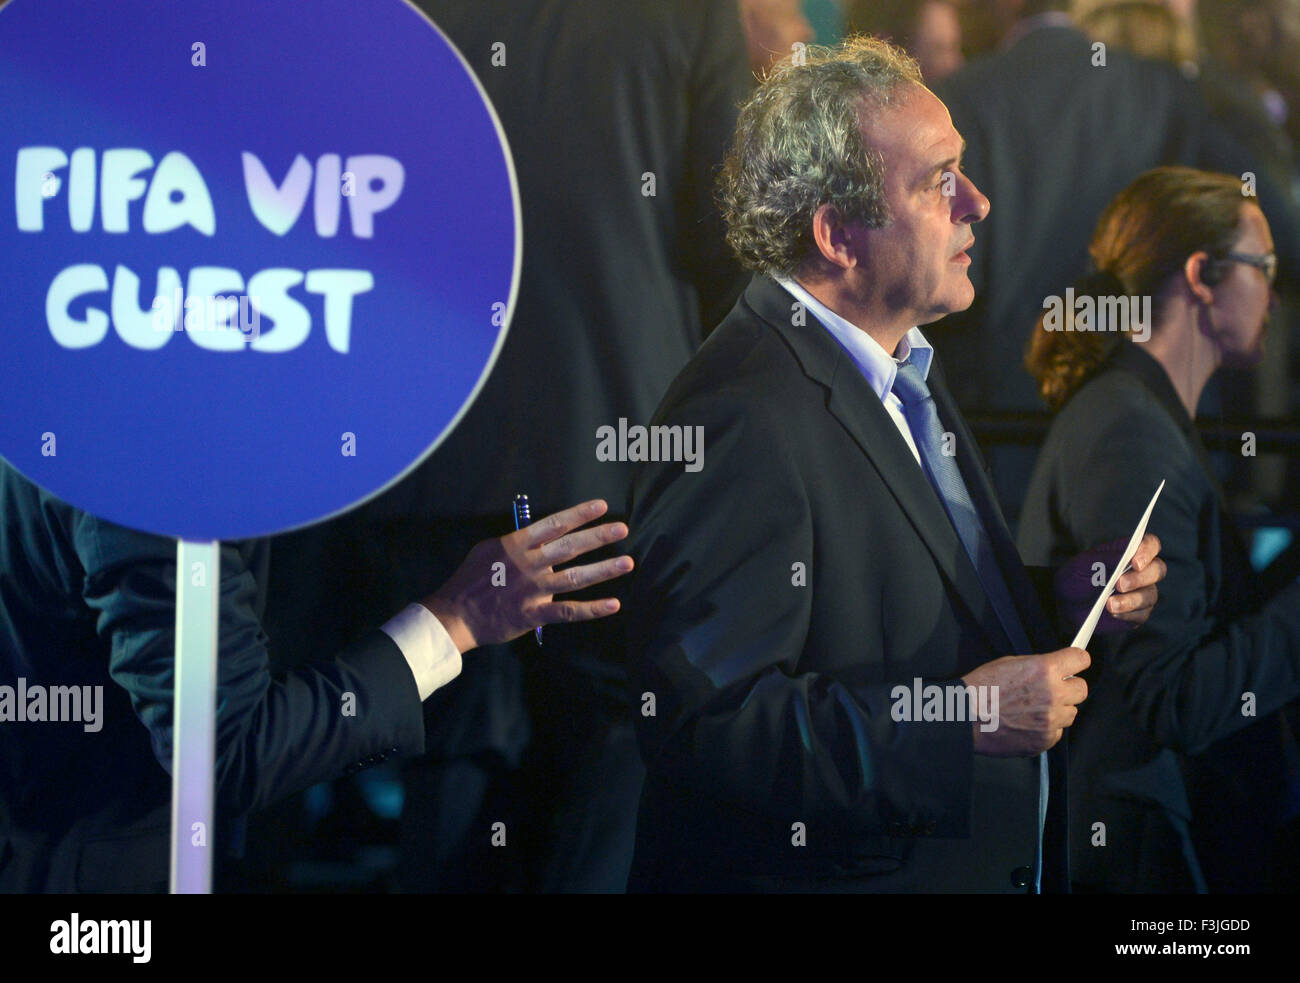 Presidente de la Asociación Europea de Fútbol (UEFA, el francés Michel Platini, es visto antes del sorteo final de la ronda preliminar de la fase de grupos de la Copa Mundial de la FIFA 2014 en Costa do Sauipe, Bahía, Brasil, 06 de diciembre de 2013. Foto: Marcus Brandt/dpa Foto de stock